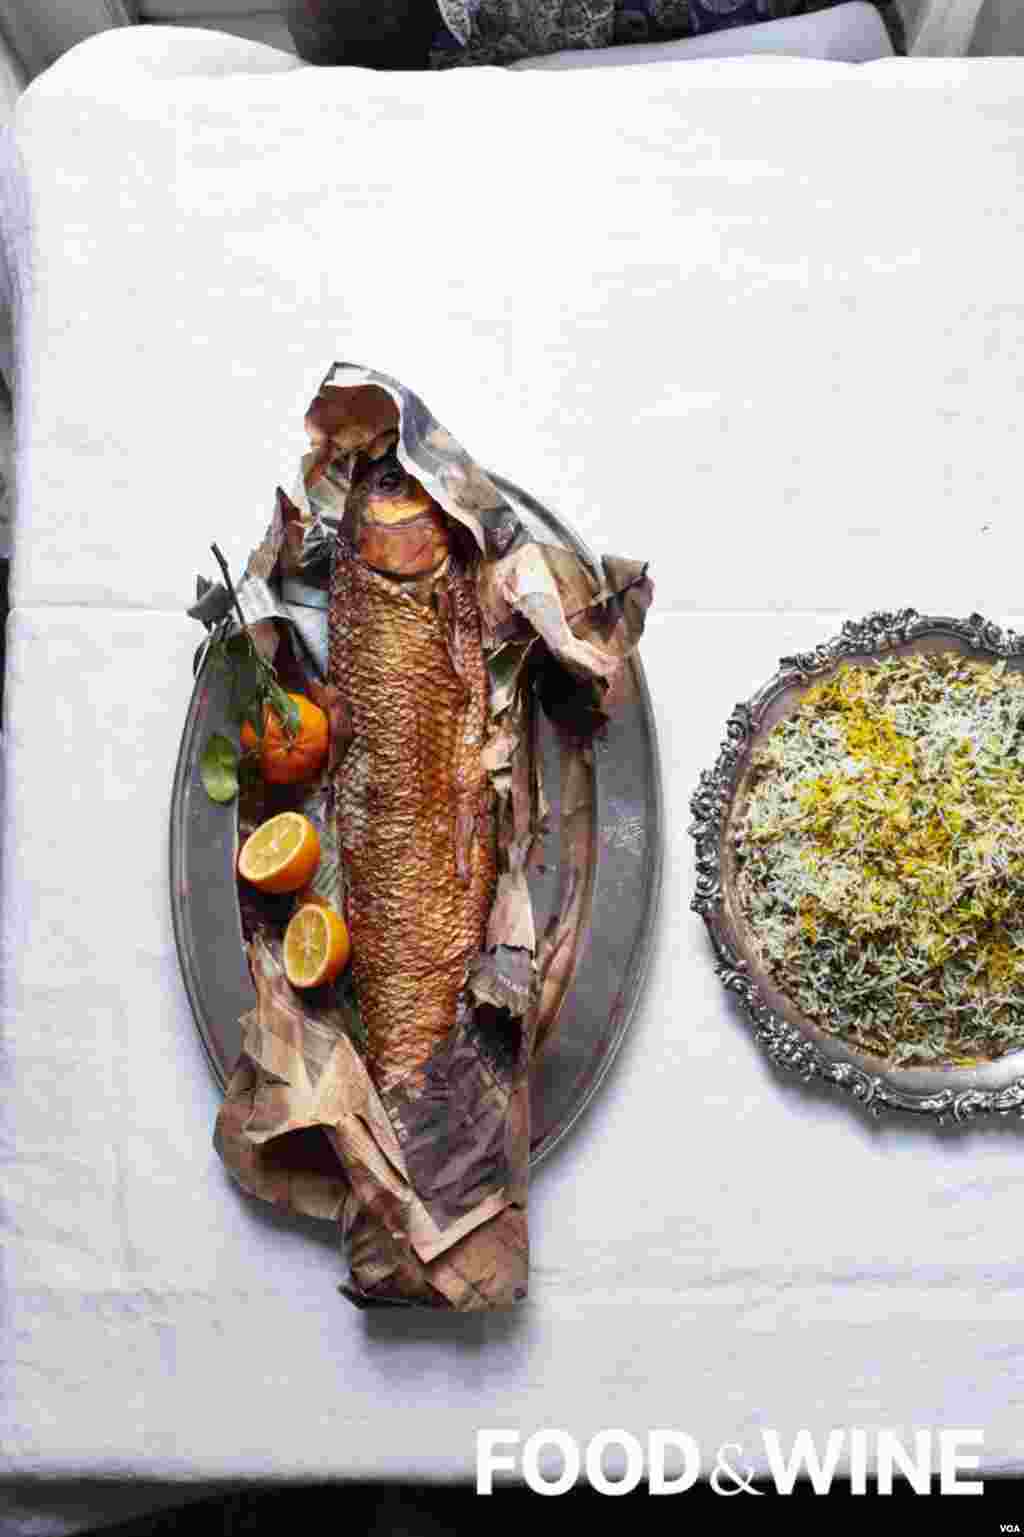 یک خوراک ماهی که عکس آن در نشریه غذا و شراب منتشر شده است.